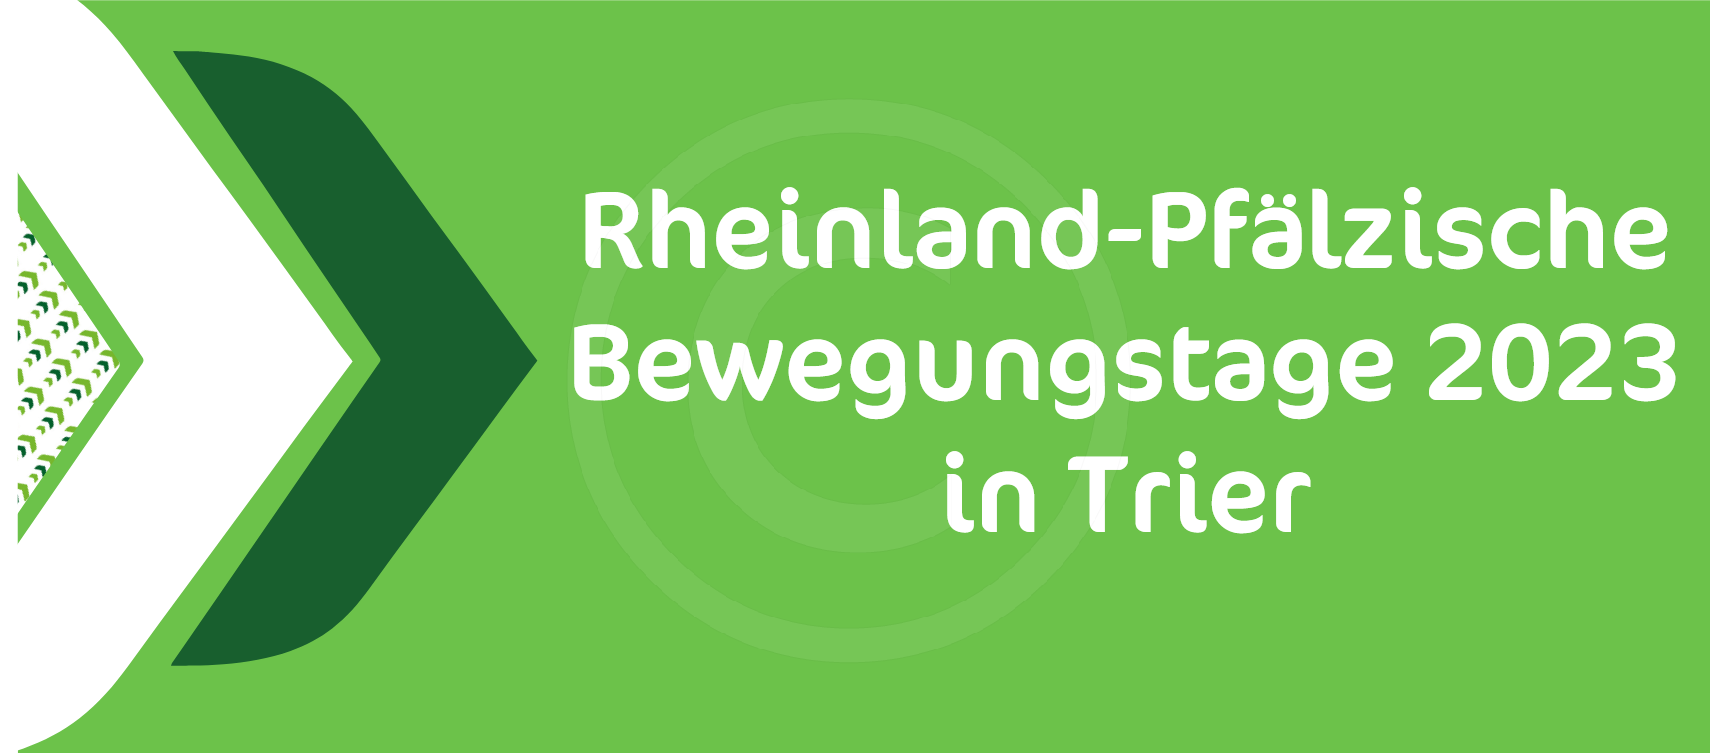 Rheinland-Pfälzische Bewegungstage 2023 Trier